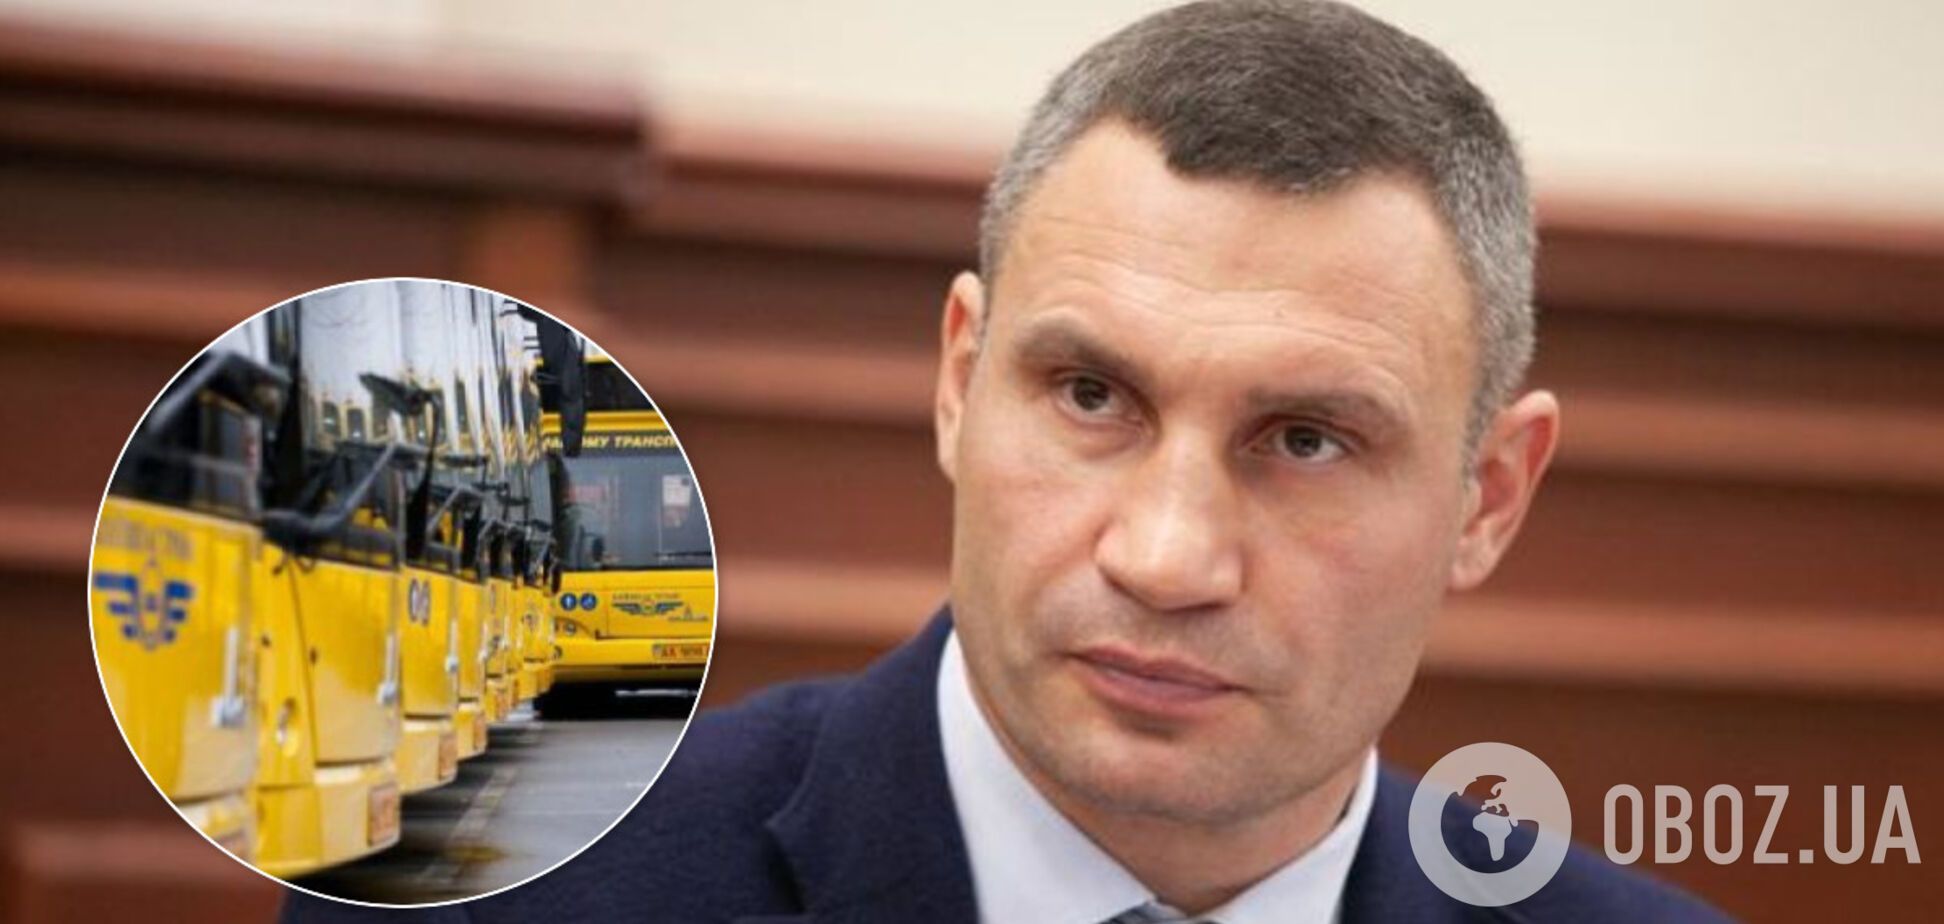 Як у мегаполісах світу: Кличко анонсував появу в Києві нових автобусів, трамваїв і тролейбусів